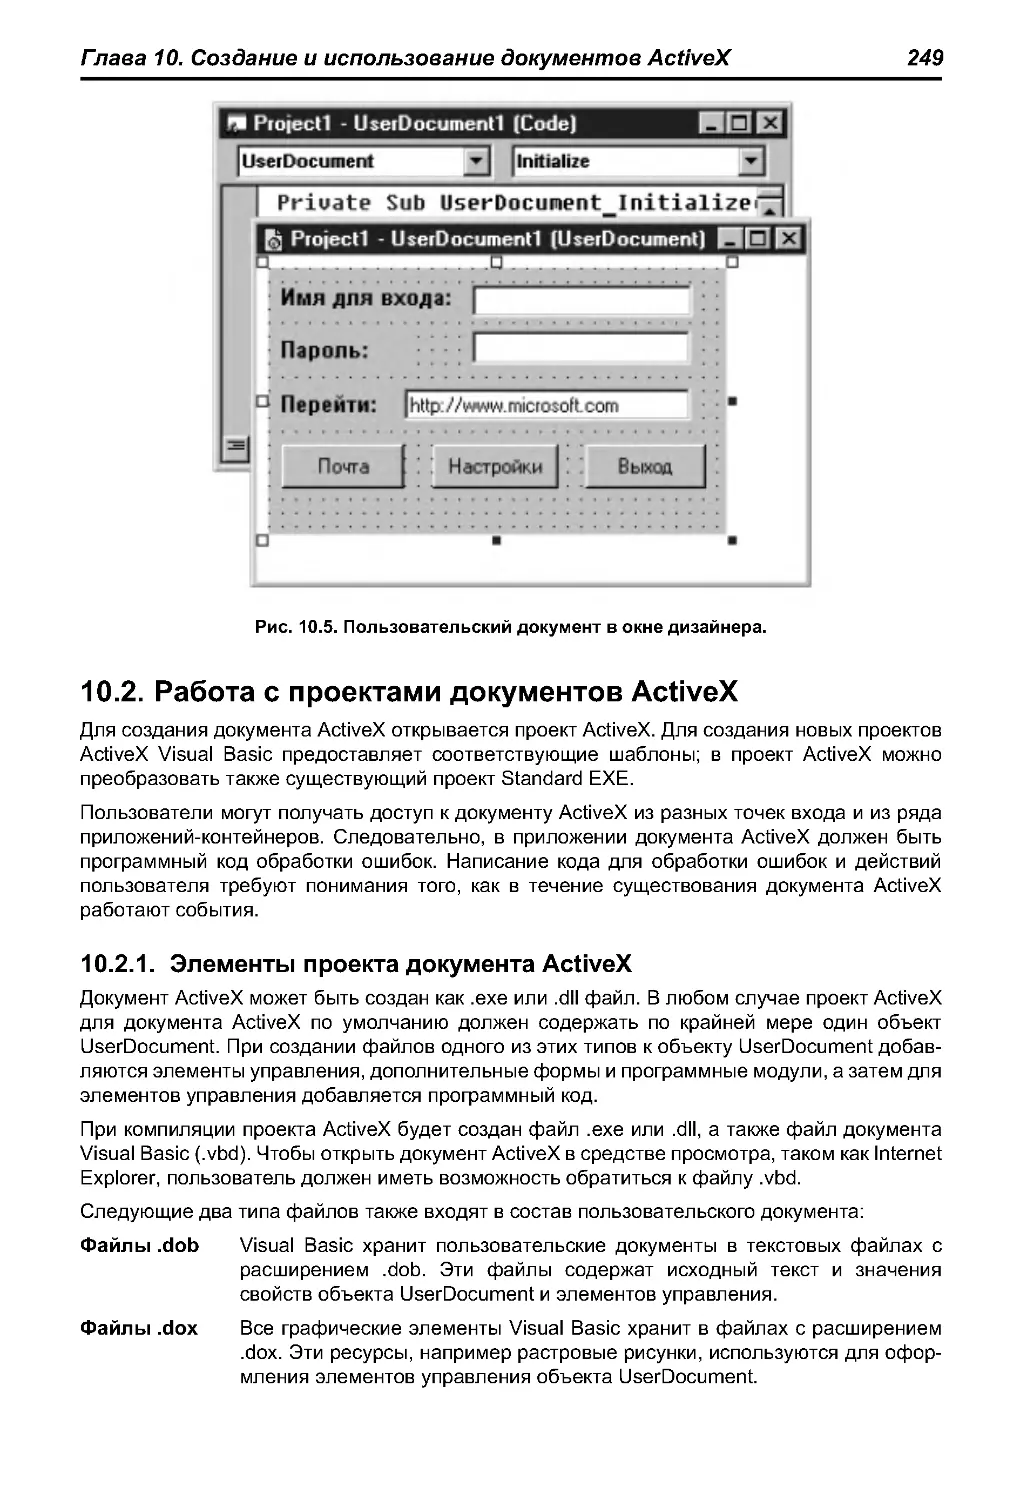 10.2. Работа с проектами документов ActiveX